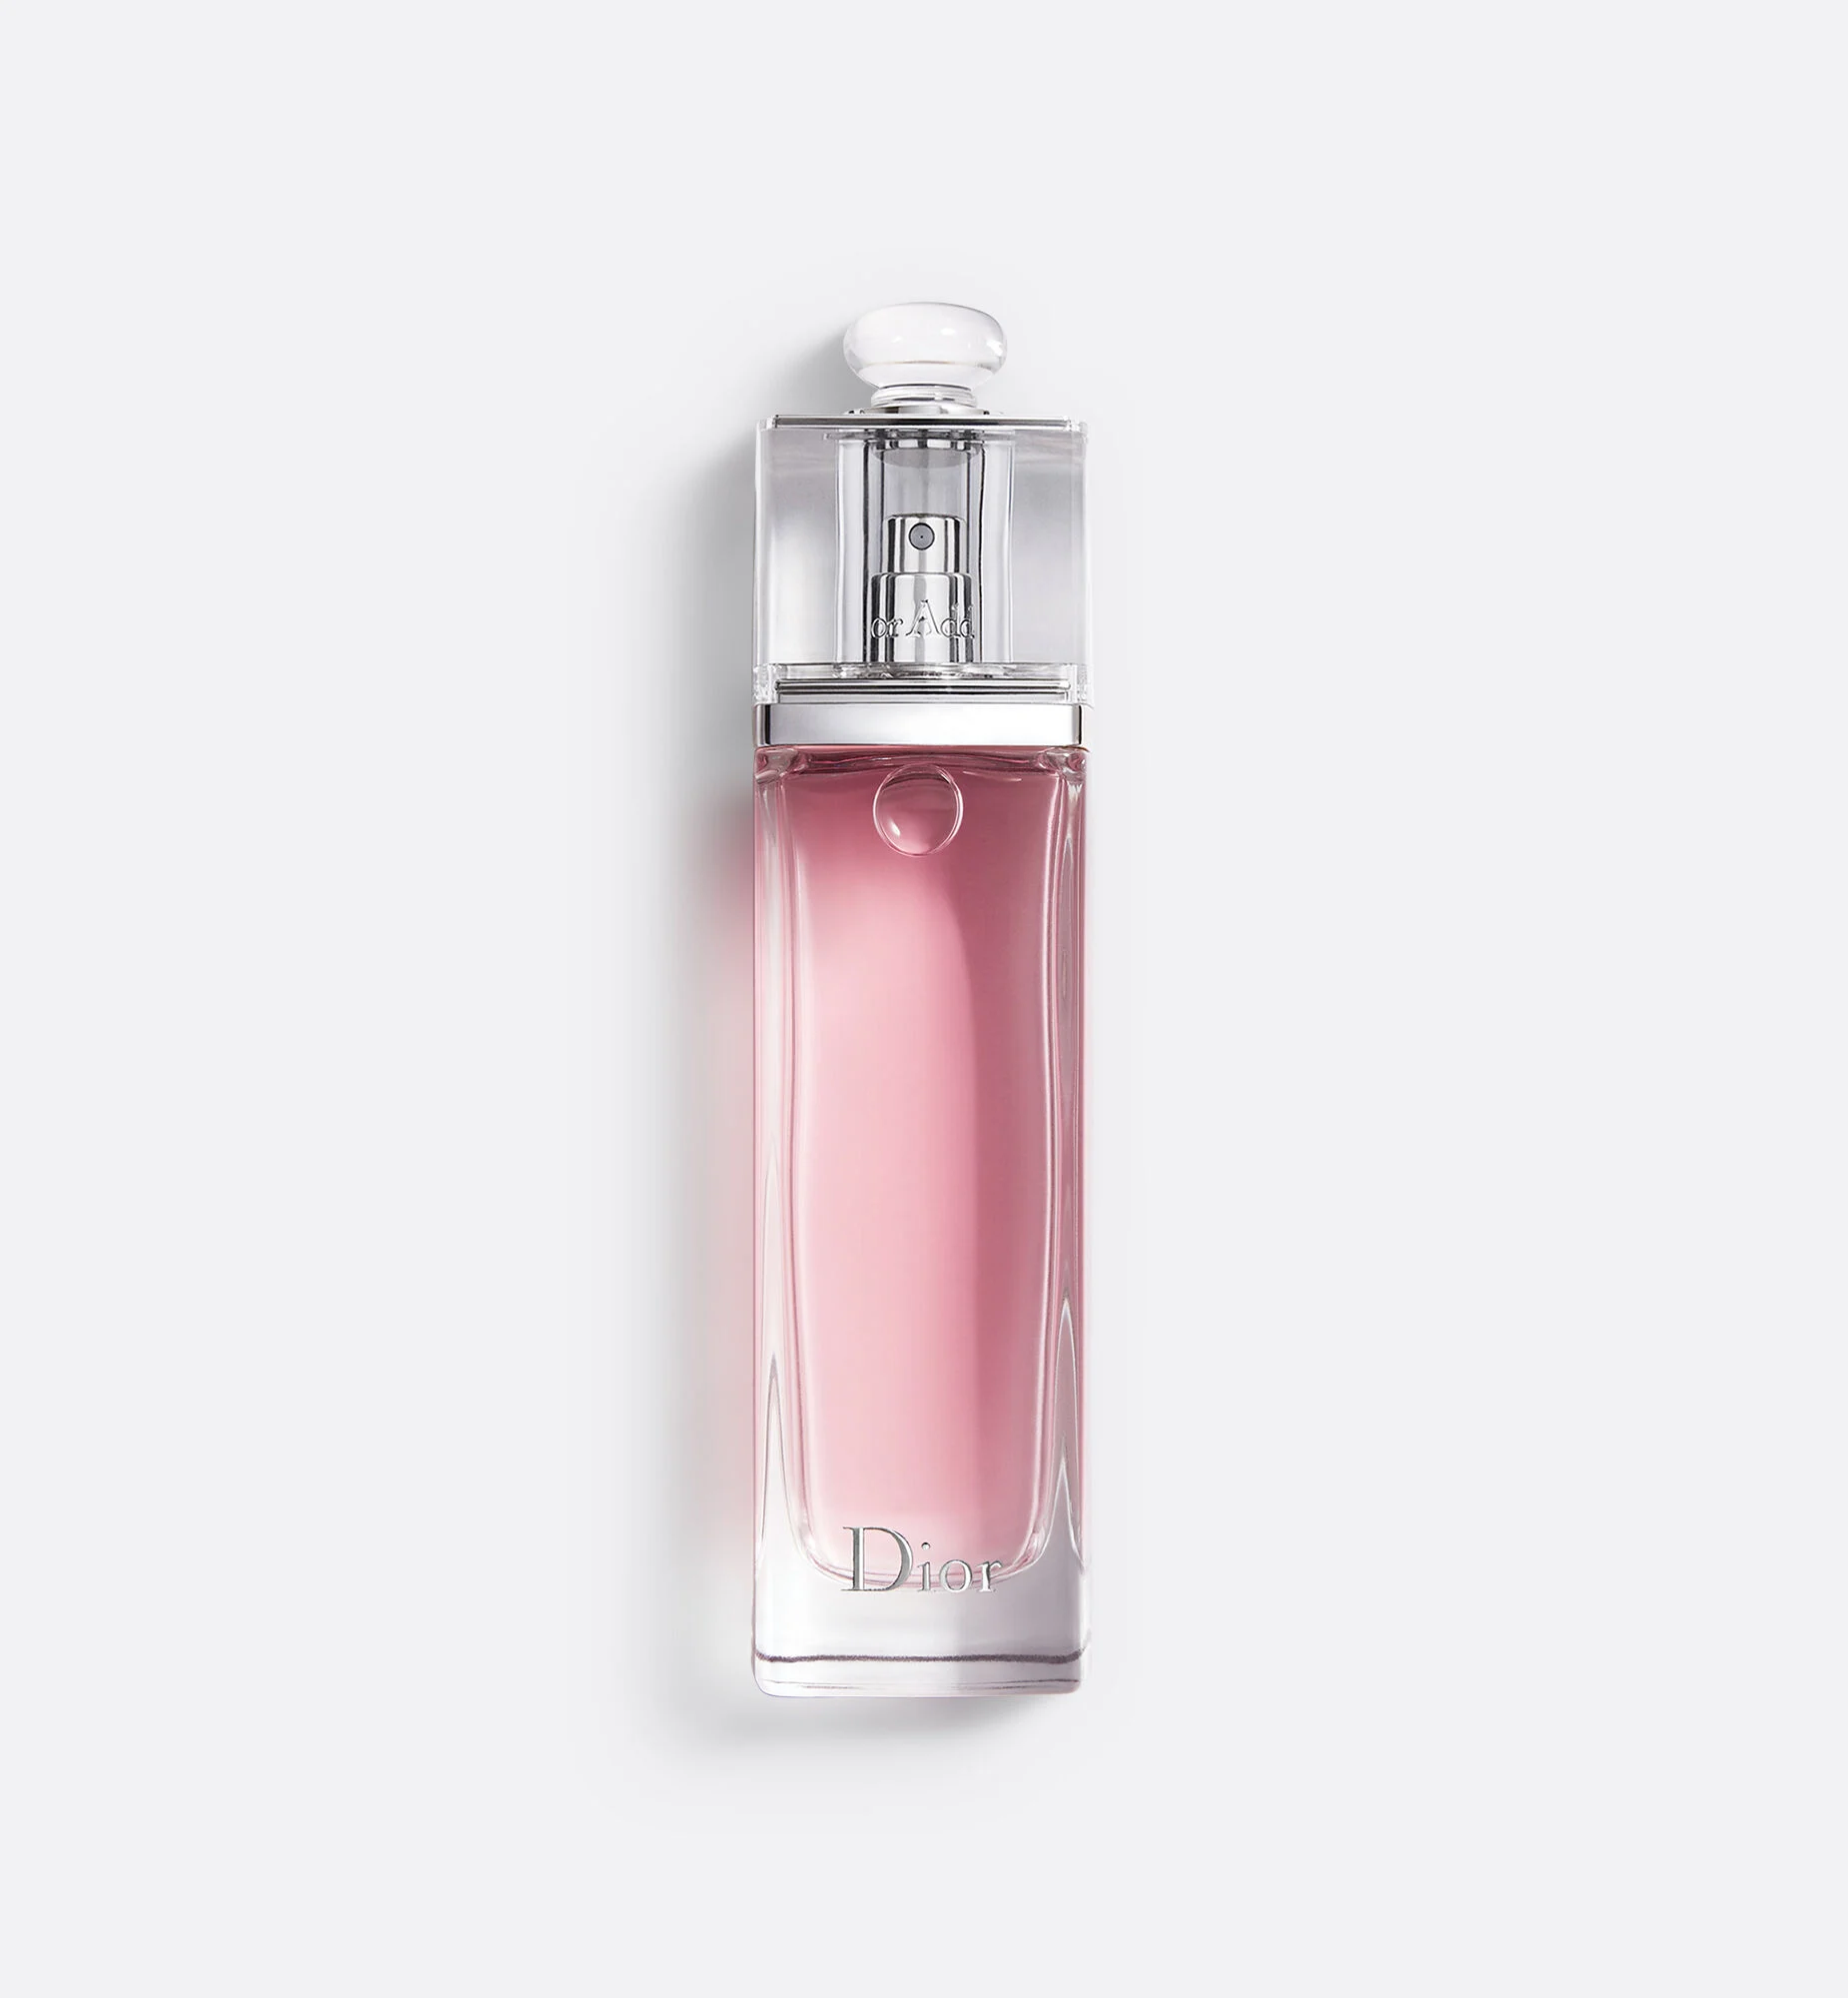 魅惑淡香水- 女香- 香氛| DIOR dior.cn